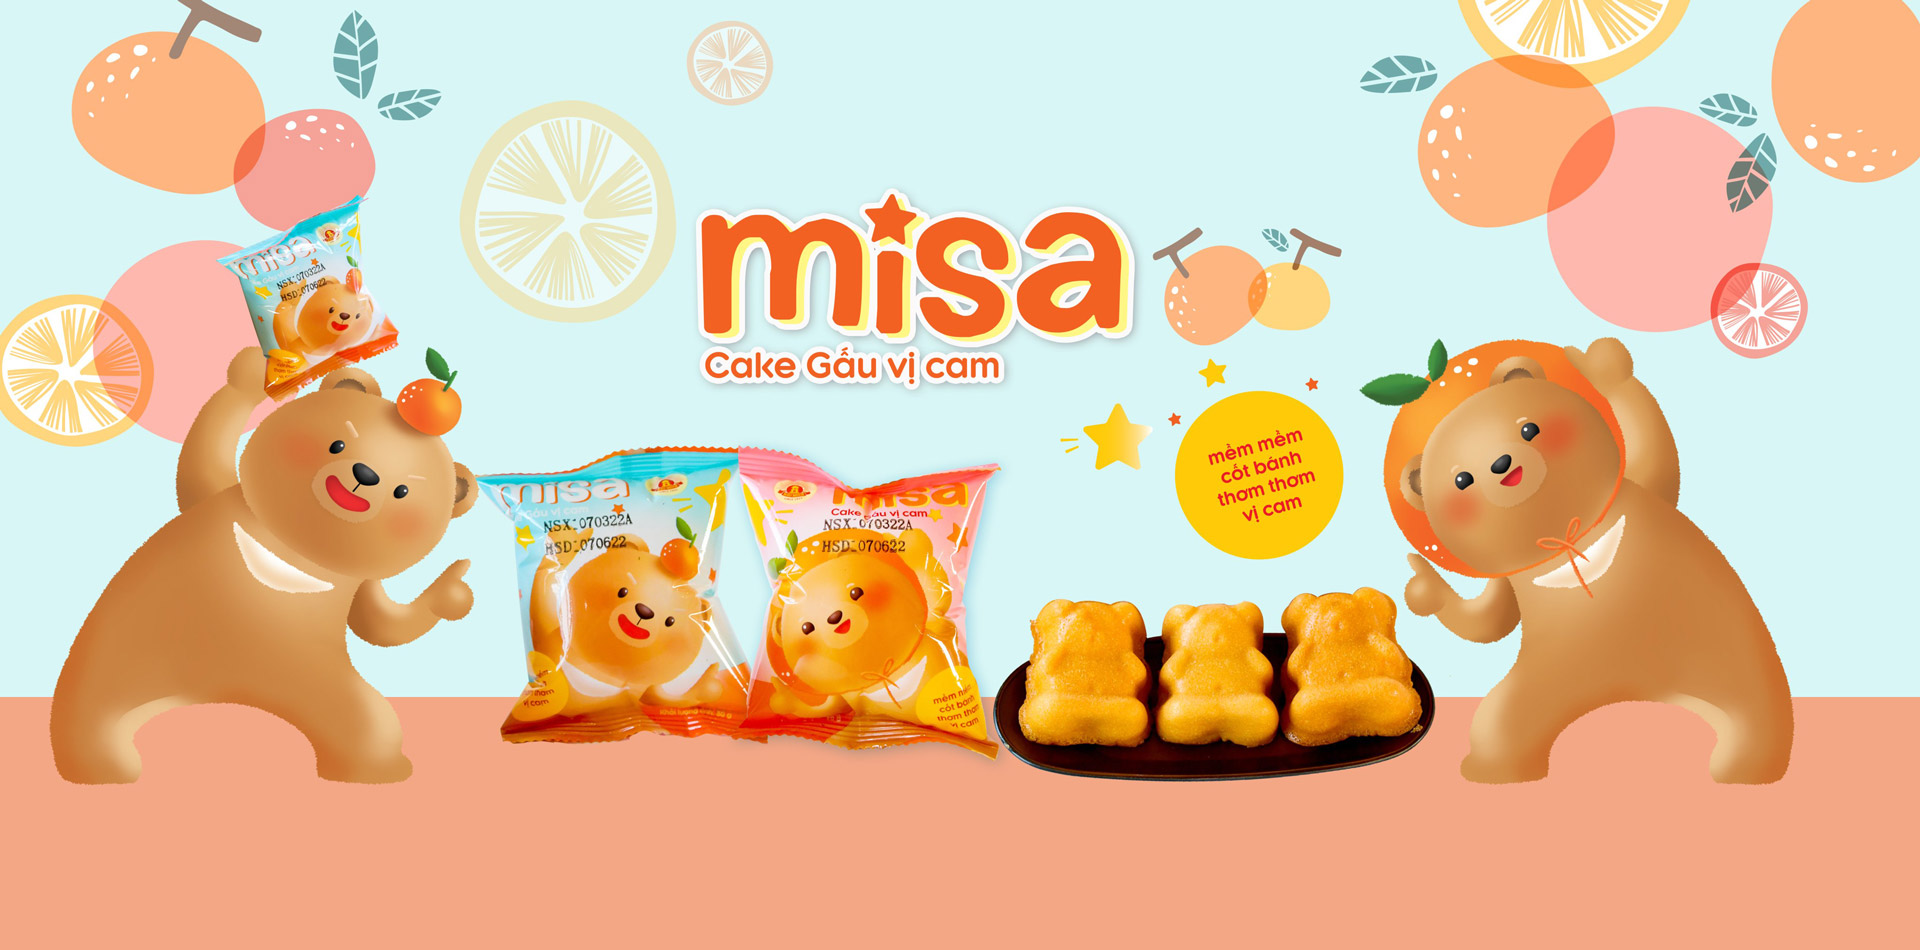 Bánh Misa Bảo Minh - Bánh mì Gấu misa | Mua bánh Misa ngon